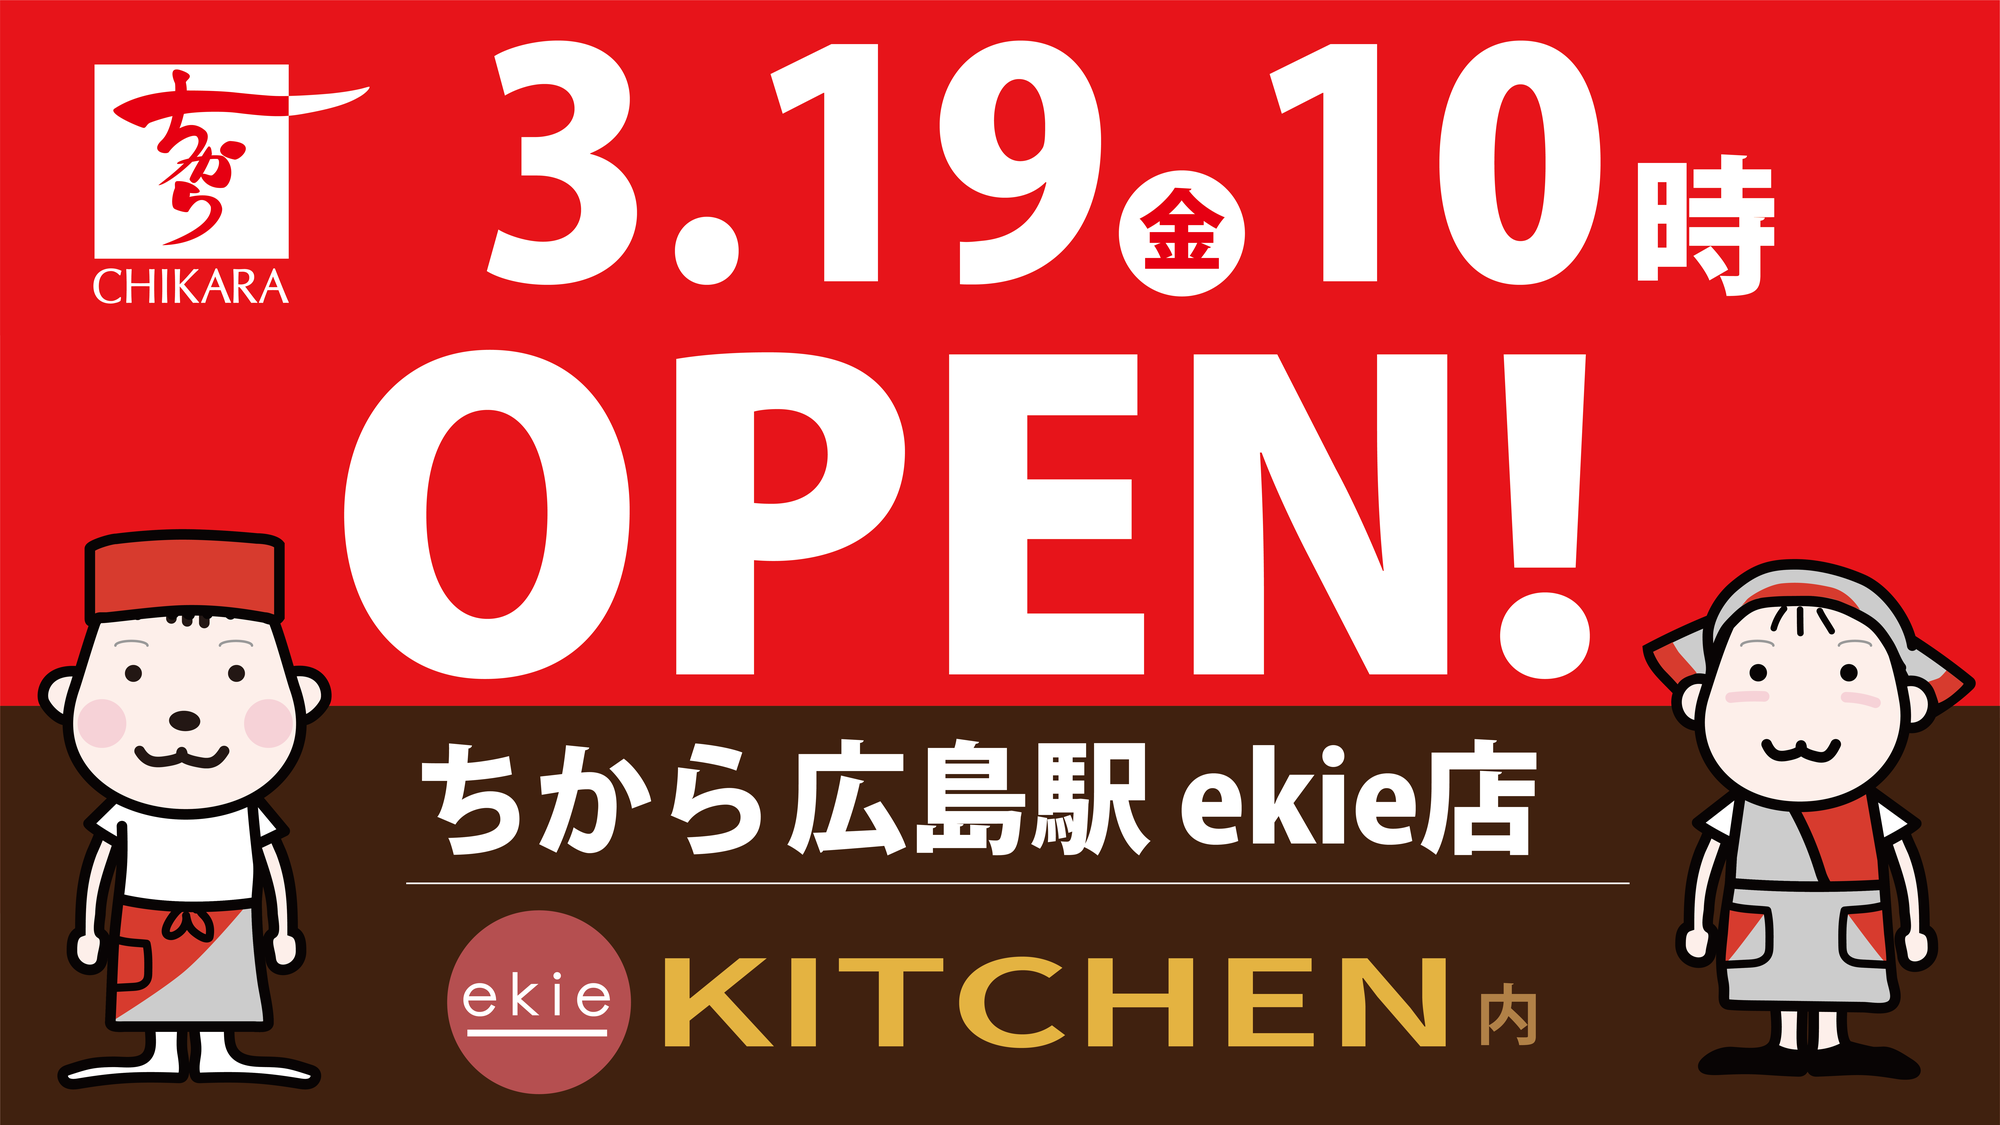 2021年3月19日「ちから 広島駅 ekie店」 開店のお知らせ